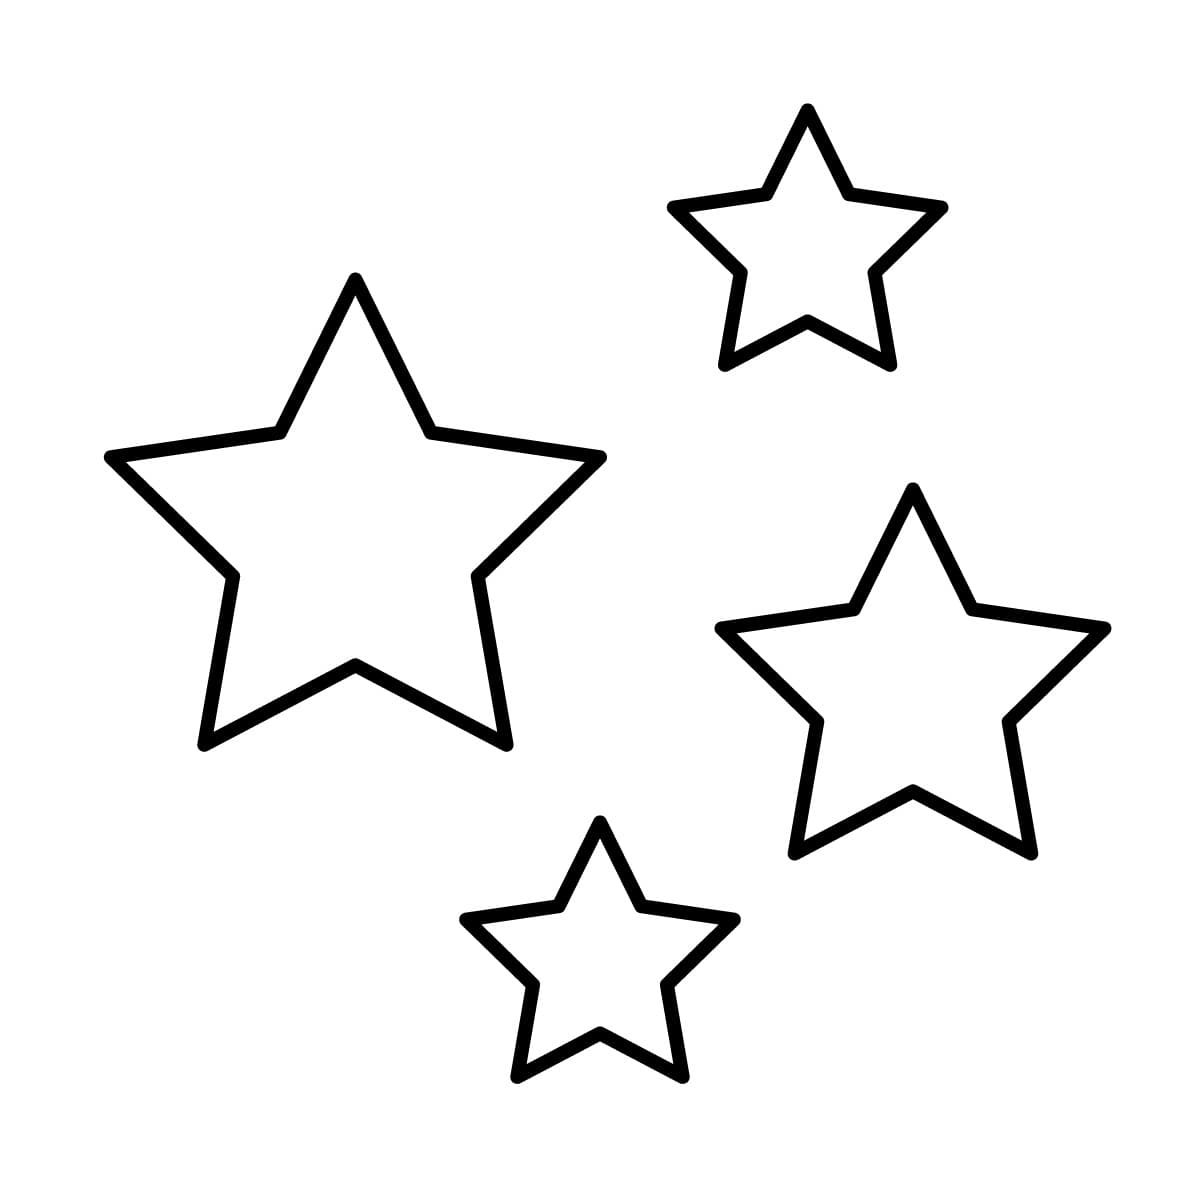 Dibujo de estrella para colorear e imprimir - Dibujos y colores